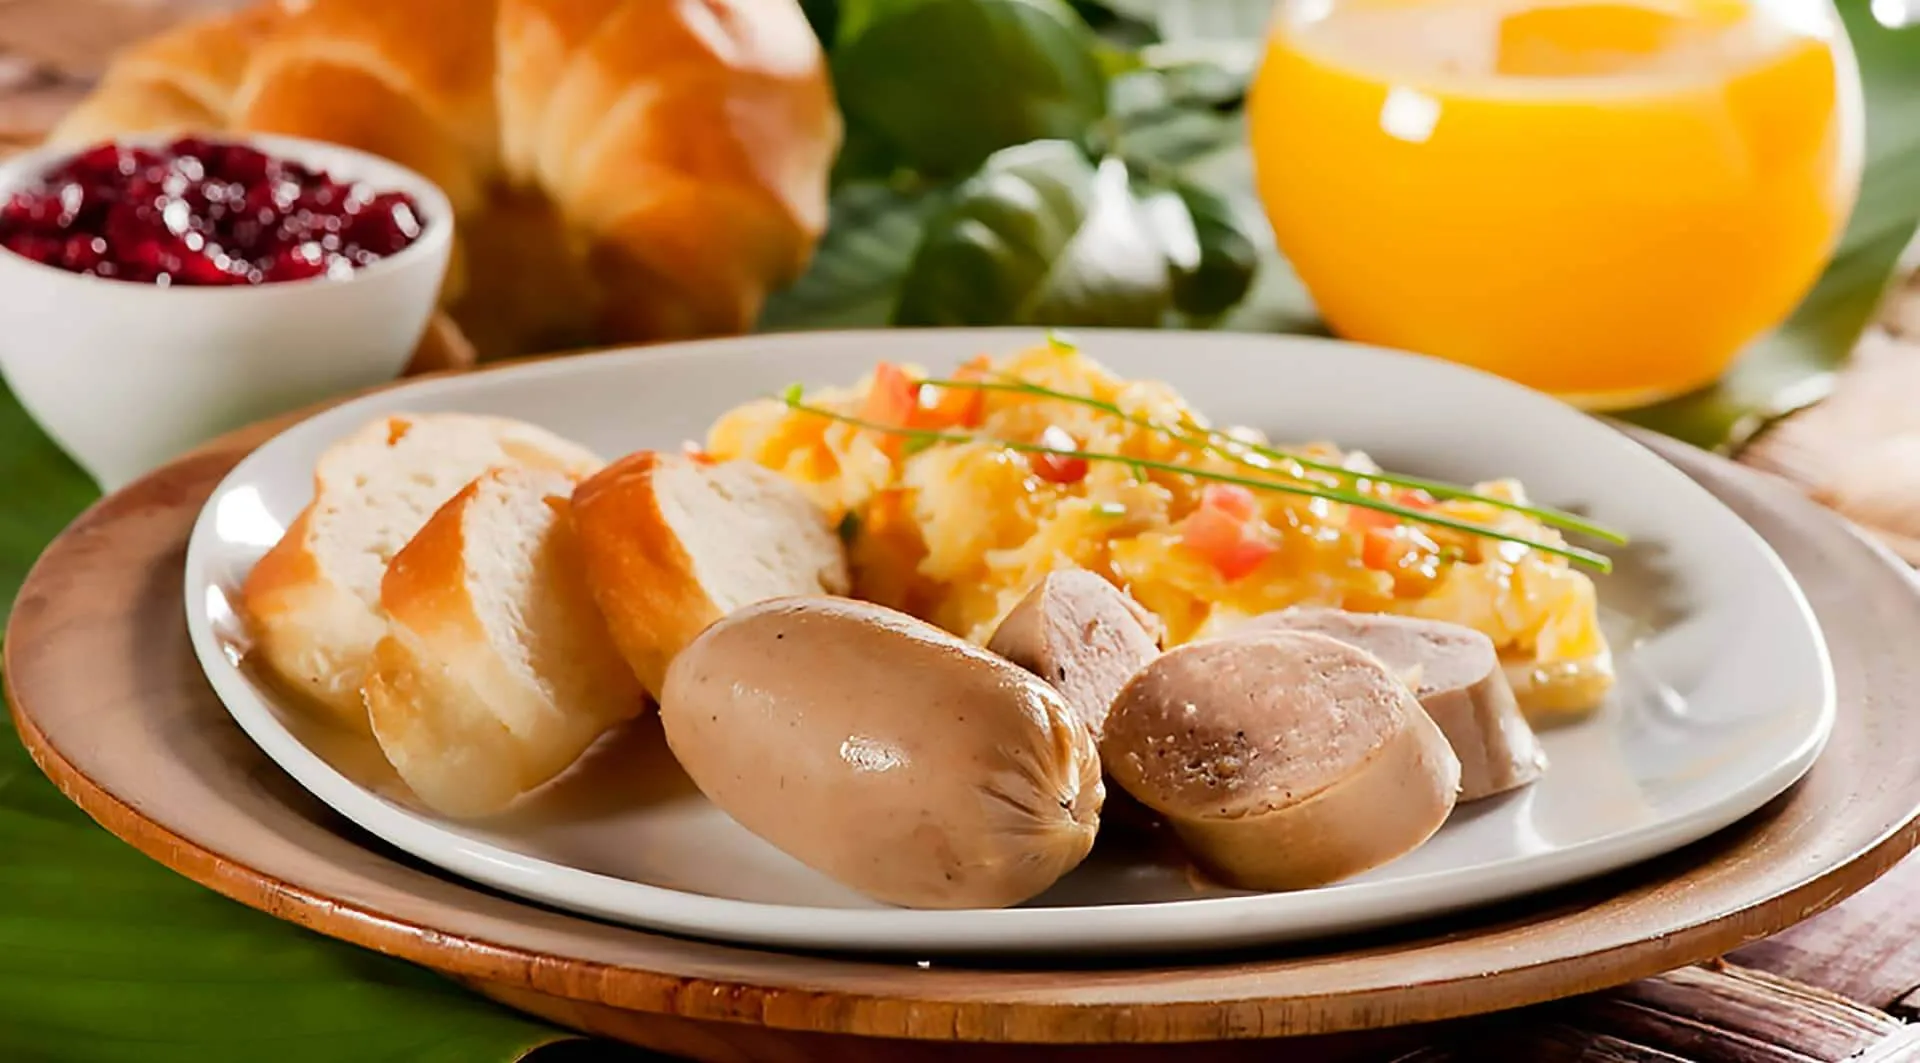 Desayuno costeño - receta de butifarra - huevo - desayunos caseros - recetas Cunit